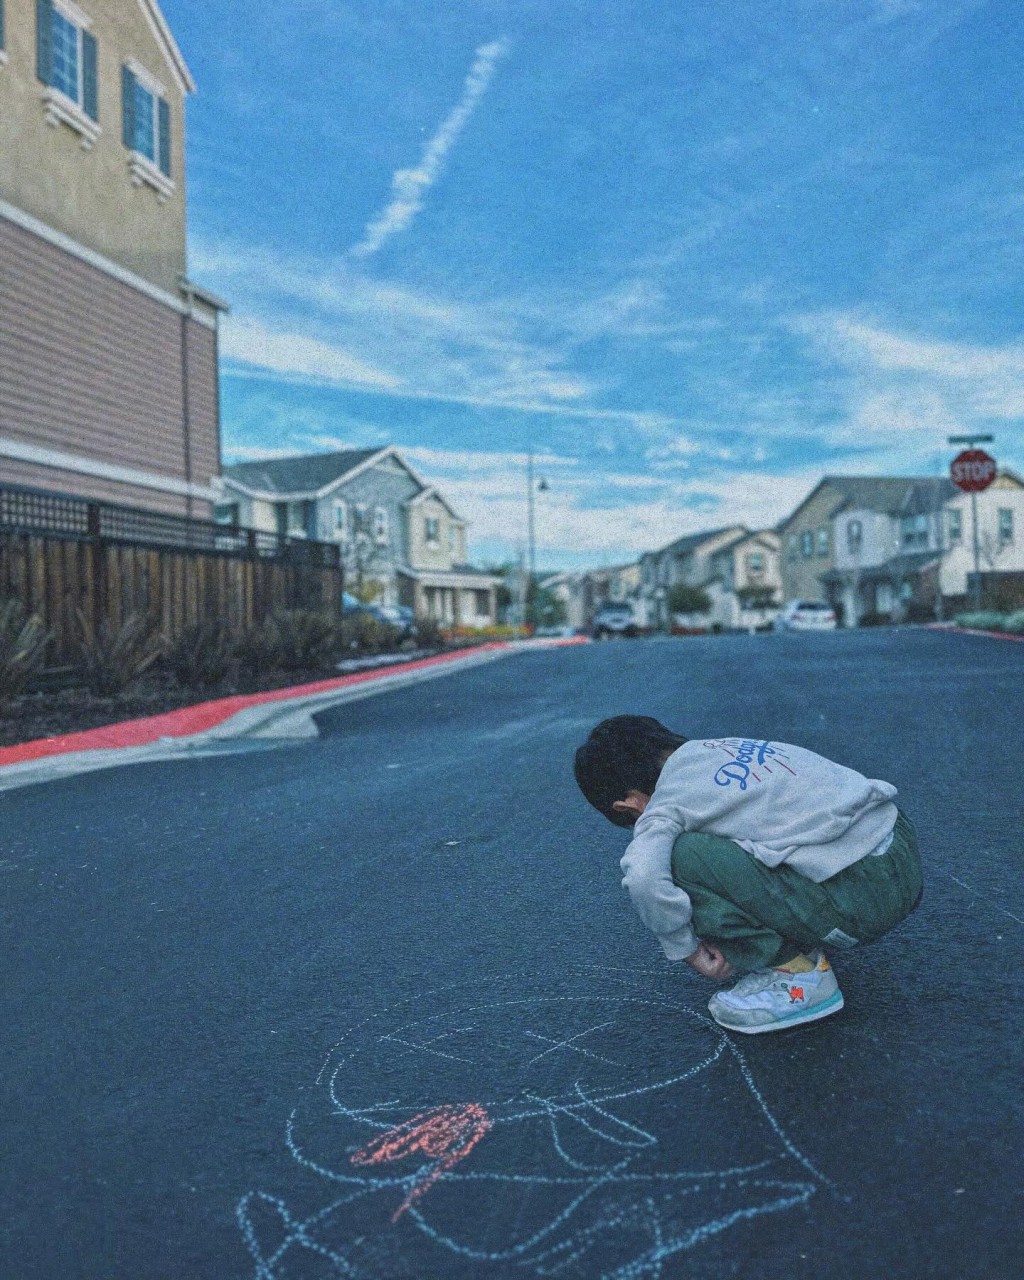 周柏豪昨日在IG发布了5张与囝囝去旅行的相片，并拍摄囝囝在街头涂鸦。